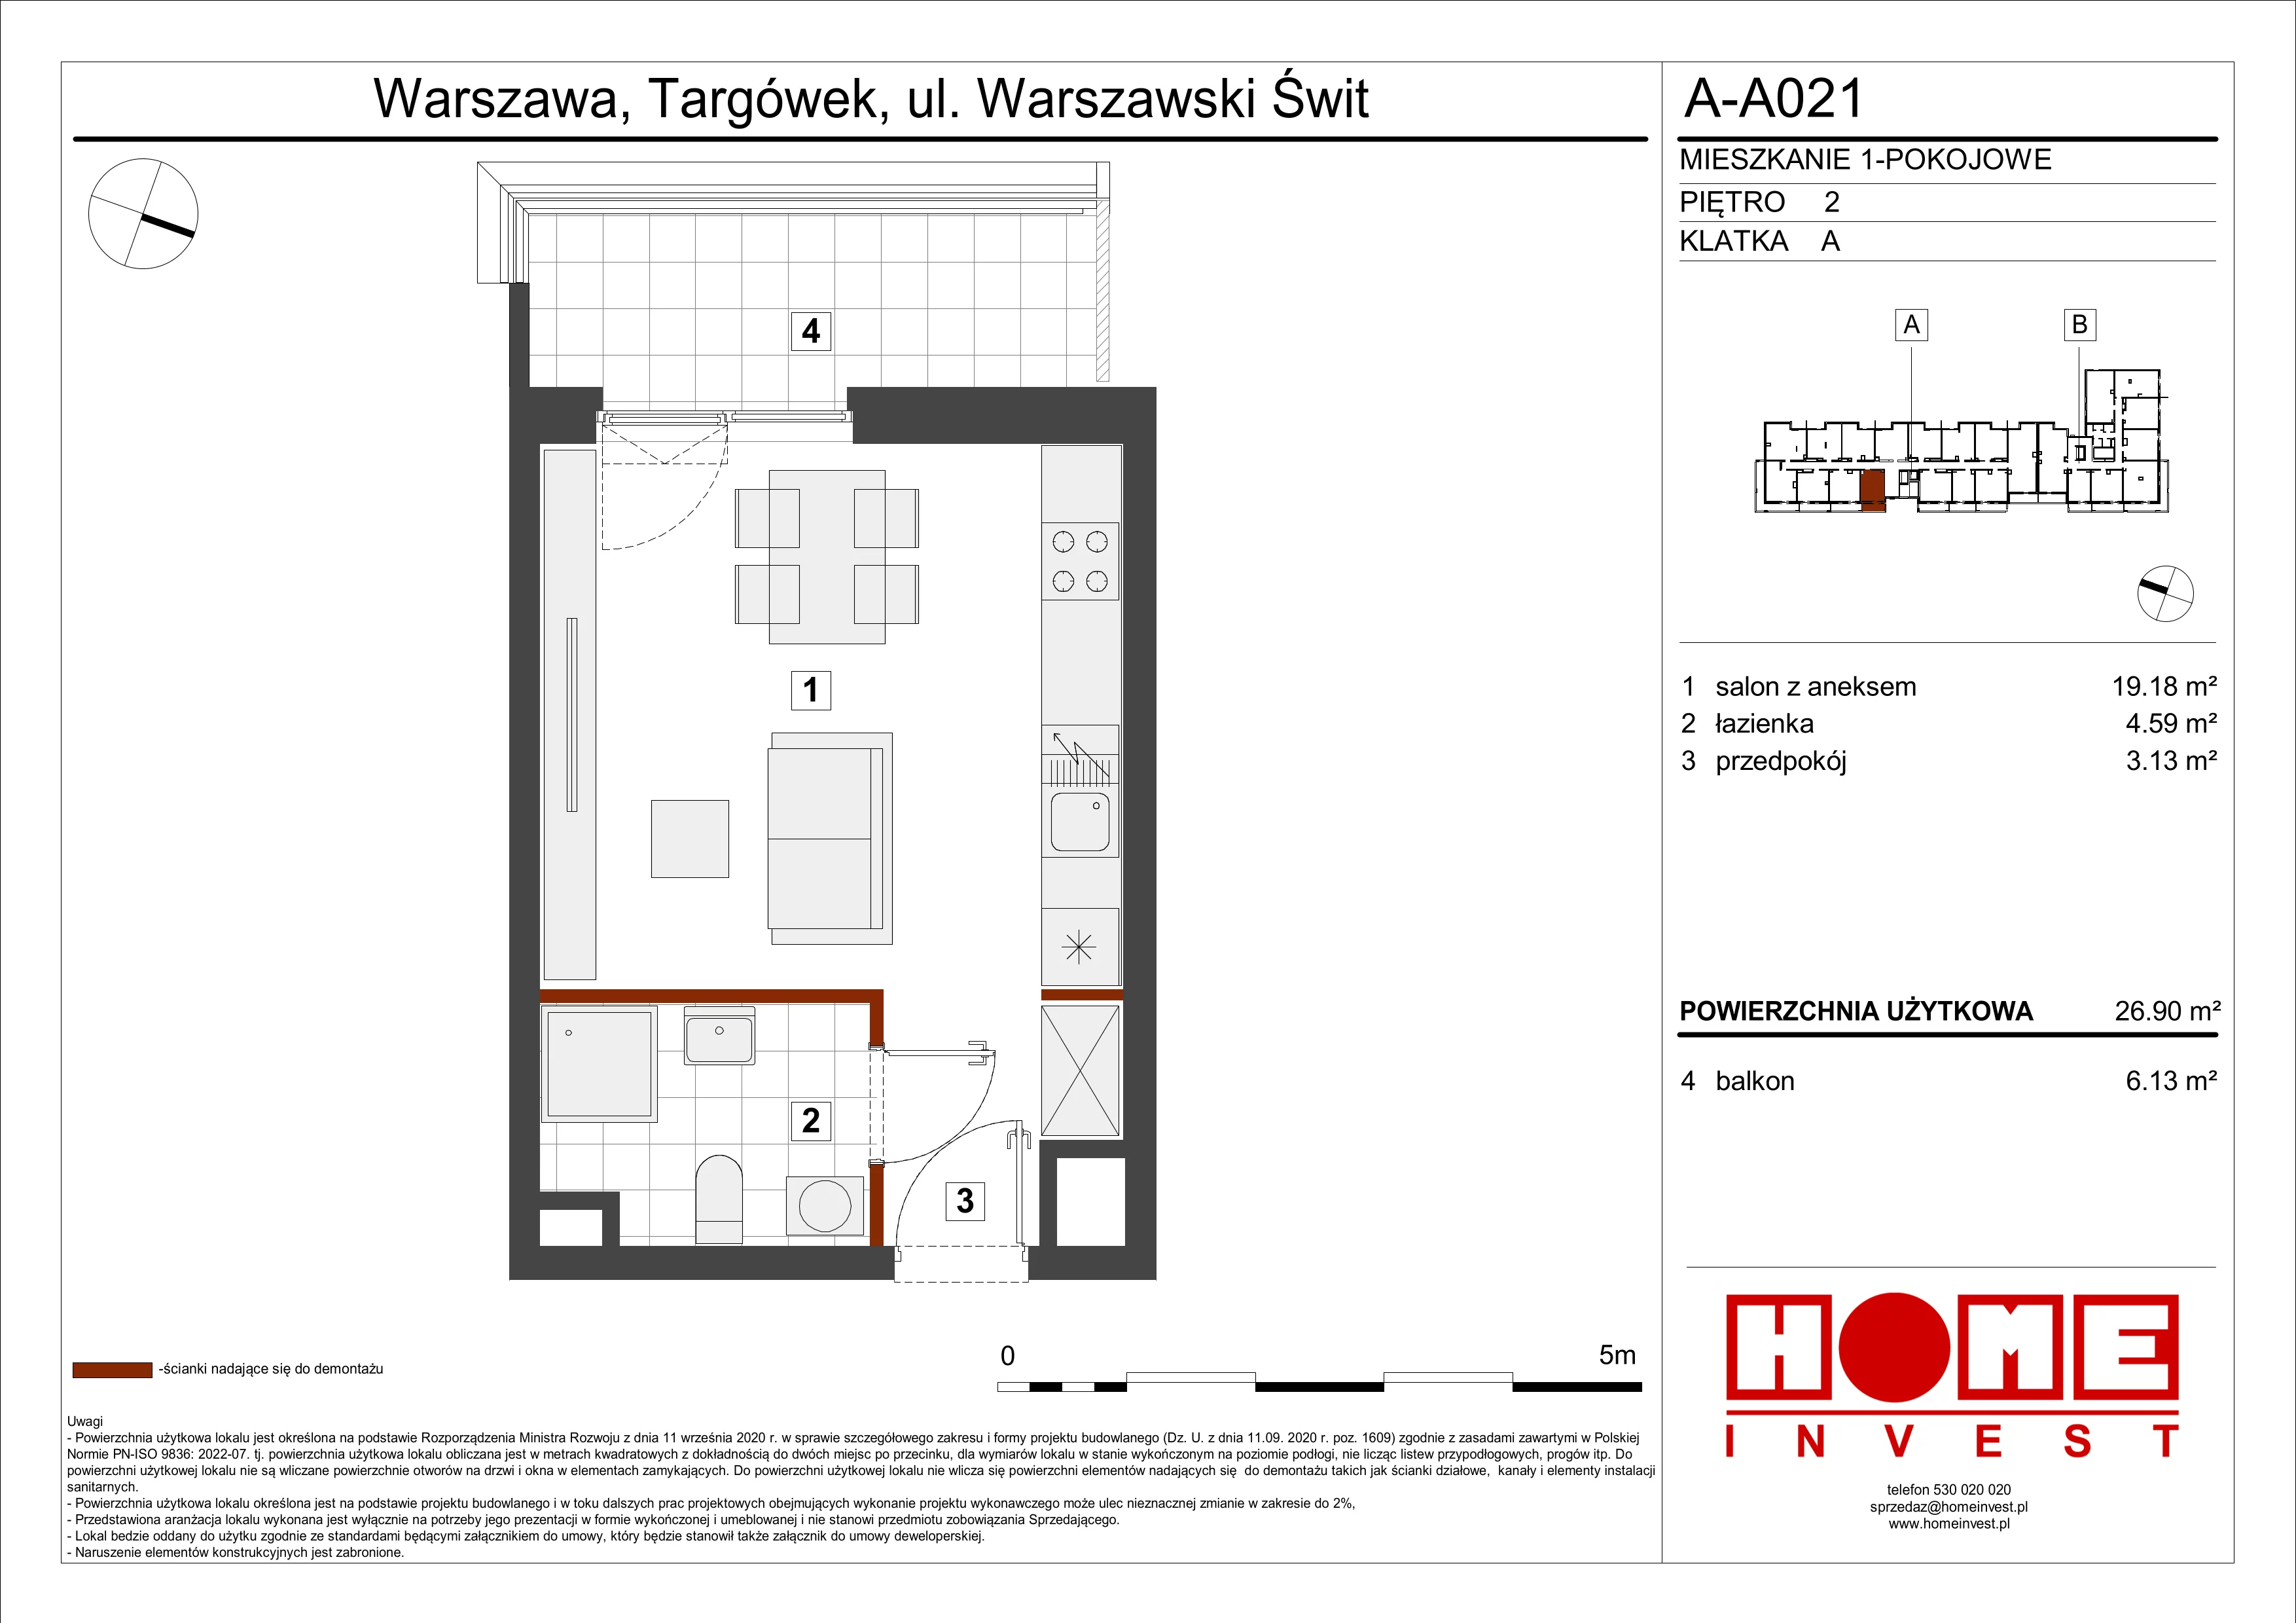 Mieszkanie 26,90 m², piętro 2, oferta nr A-A021, Warszawski Świt, Warszawa, Targówek, Bródno, ul. Warszawski Świt 5